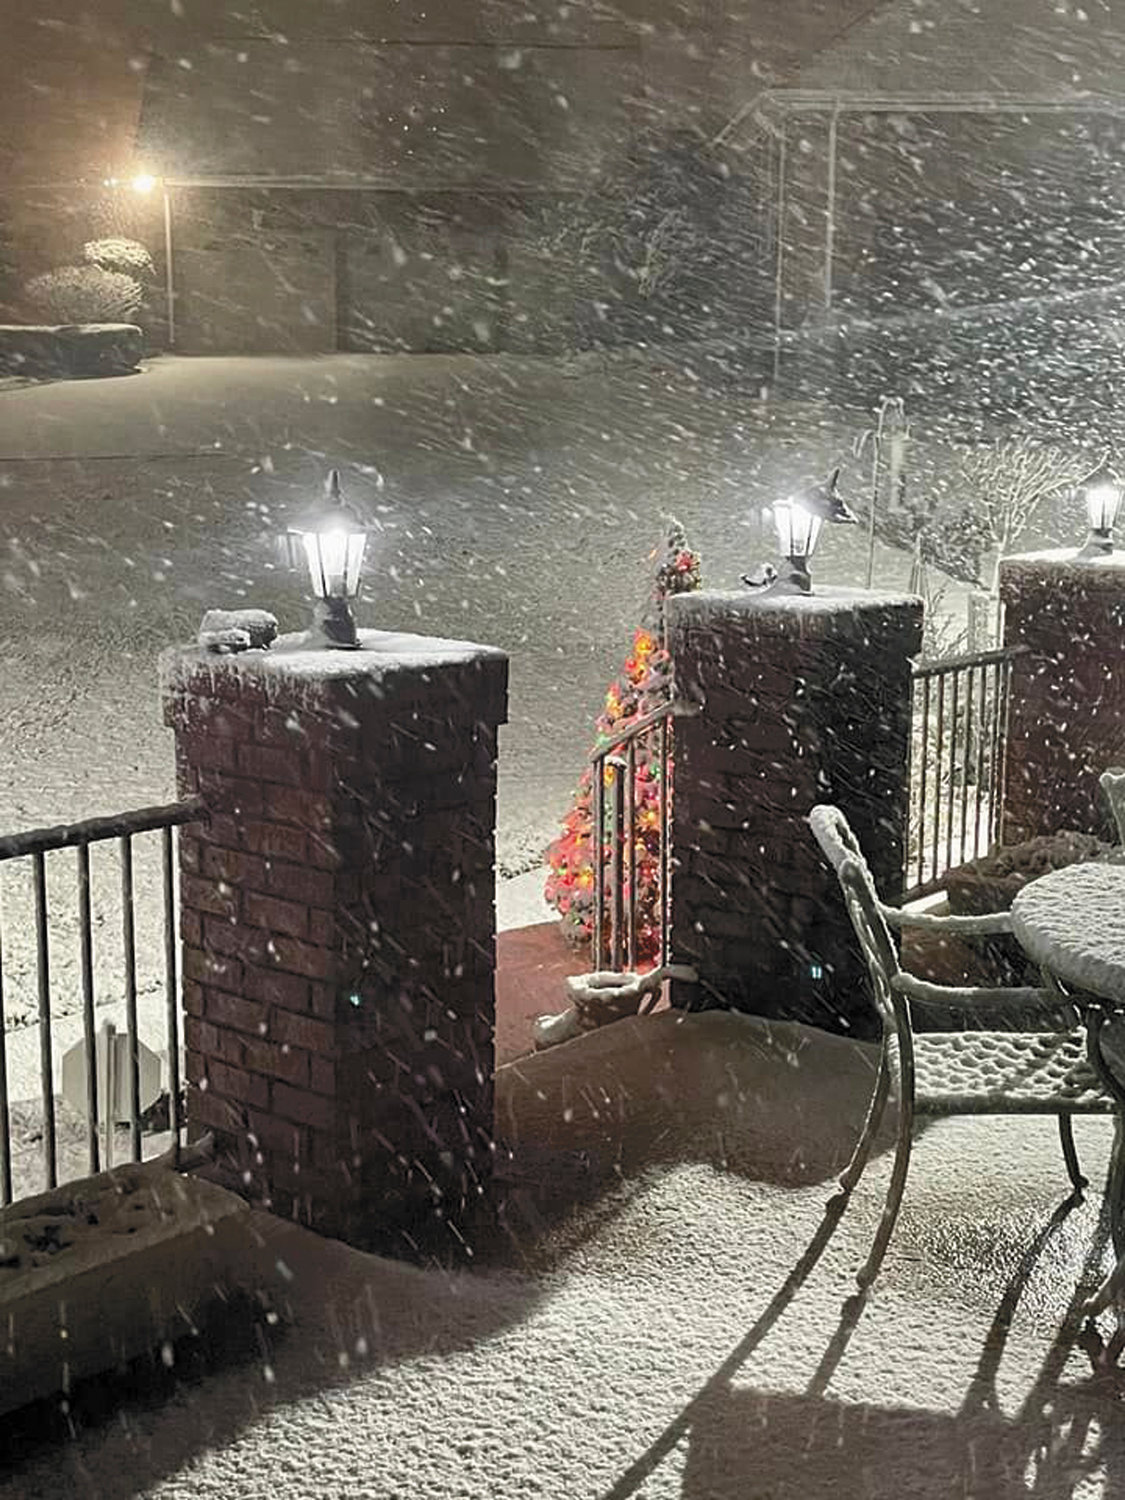 Snow flies around the patio during Sunday night’s snowstorm.